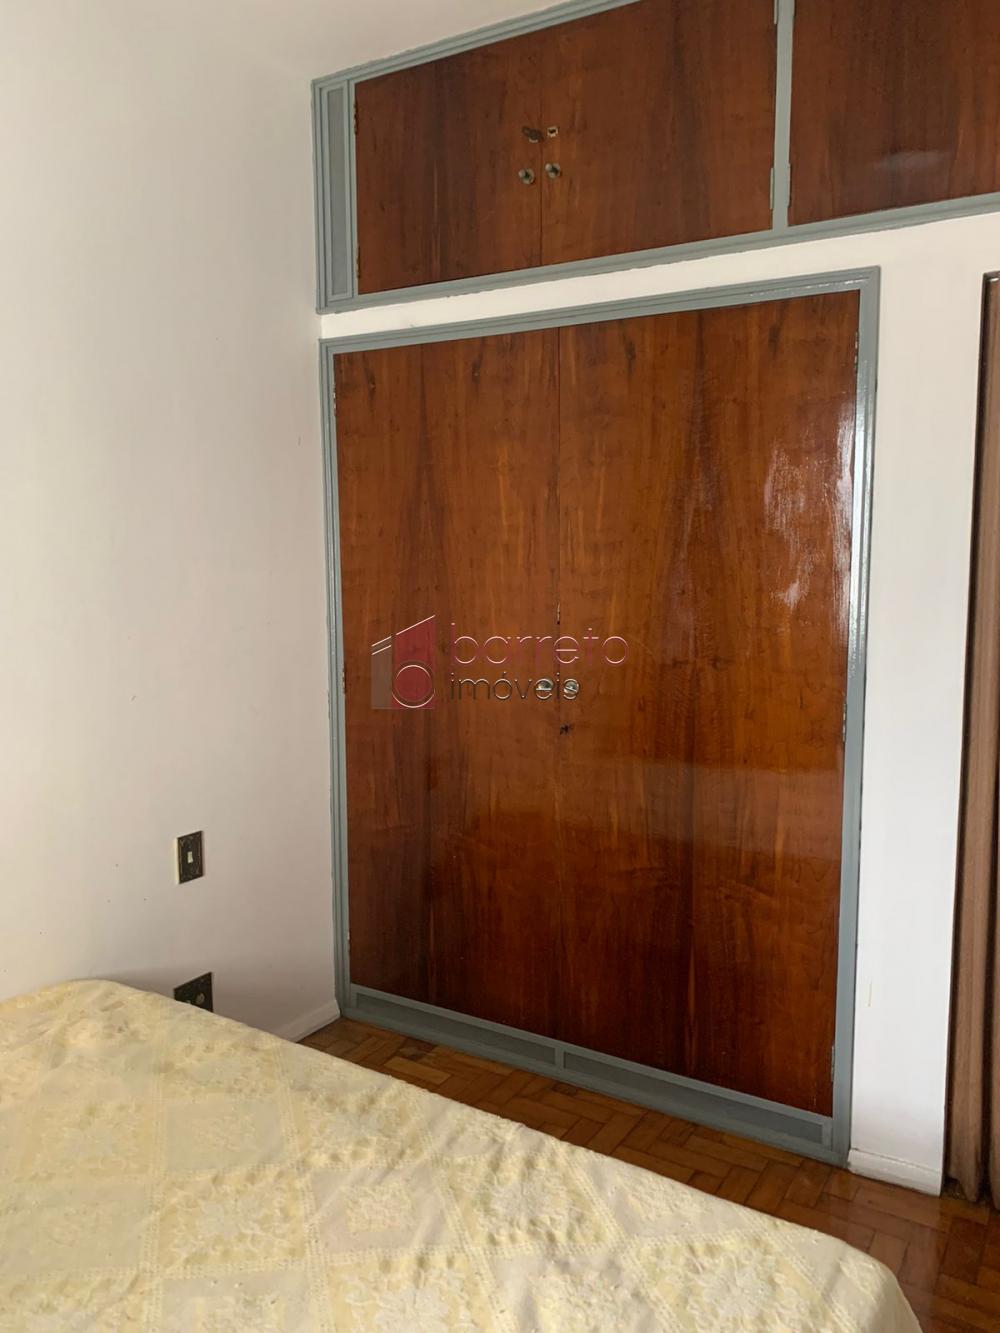 Alugar Apartamento / Padrão em Jundiaí R$ 2.500,00 - Foto 3